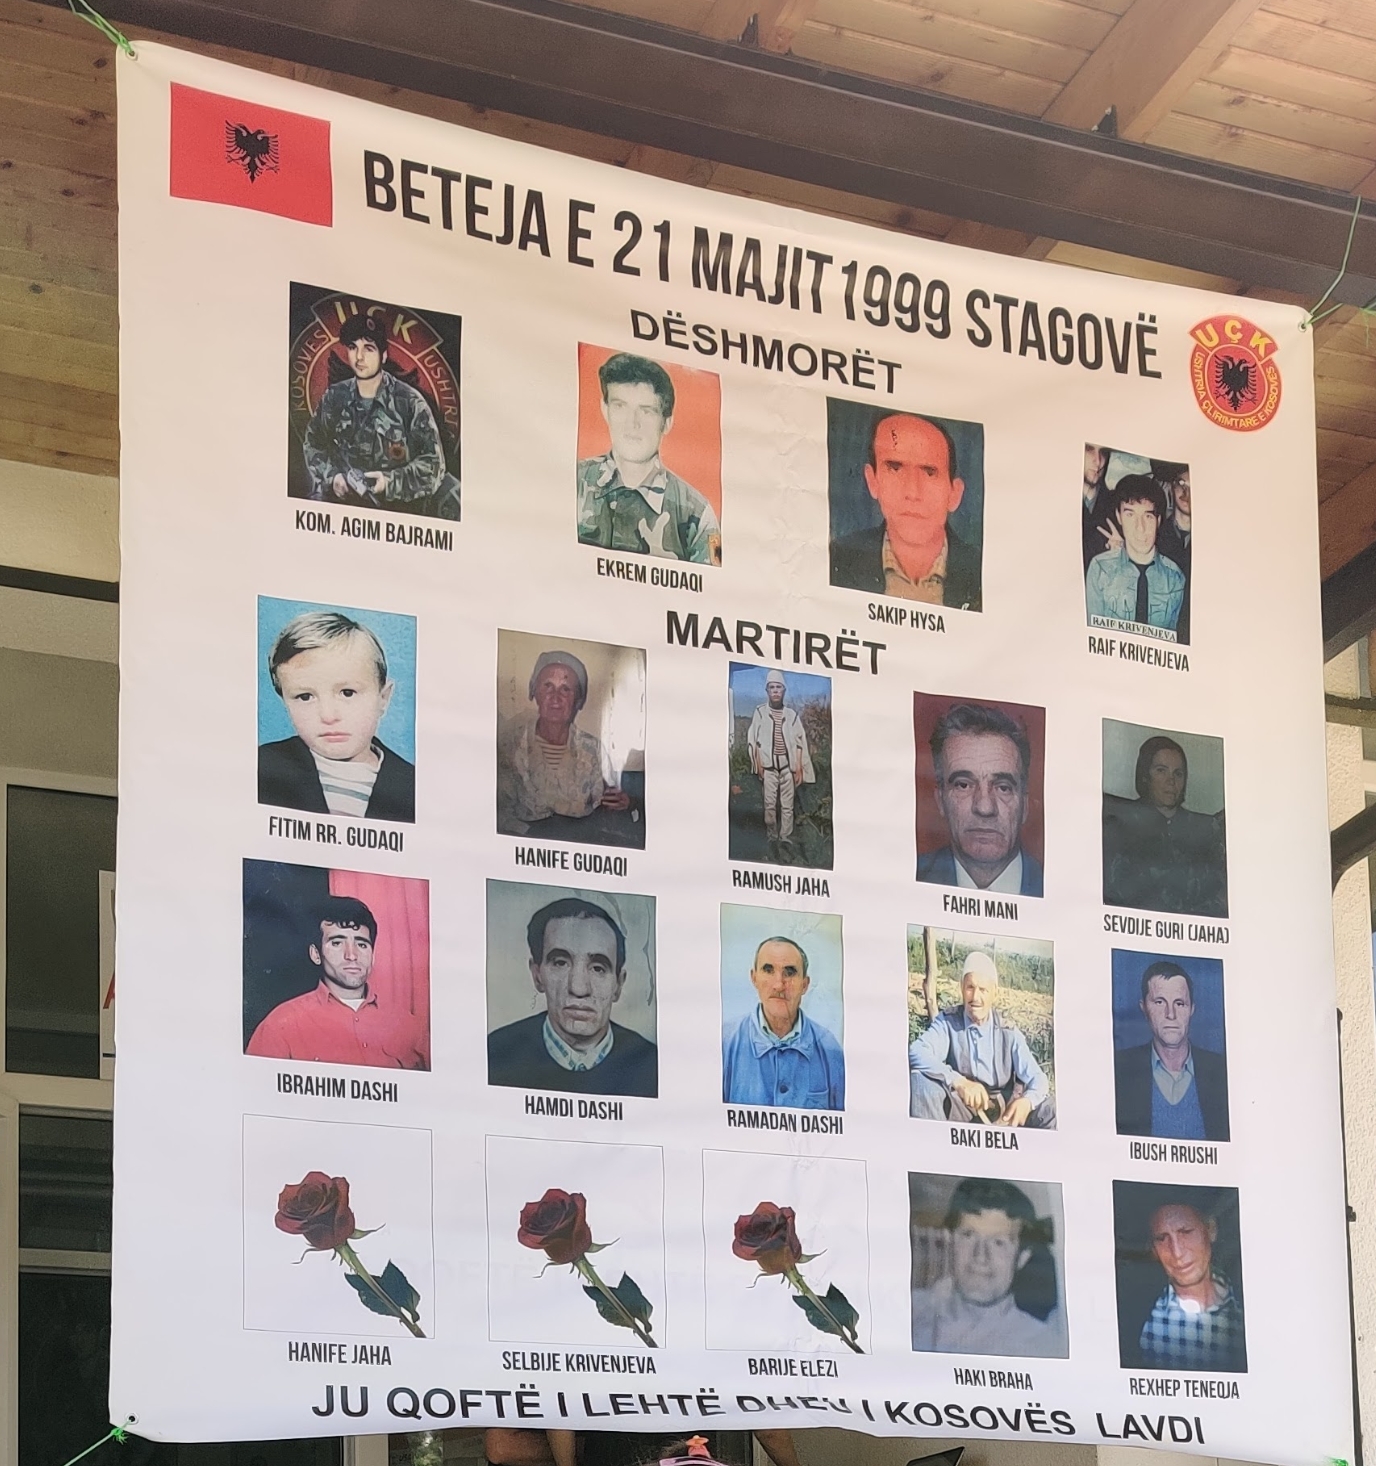 25 vjet nga masakra e Stagovës së Kaçanikut